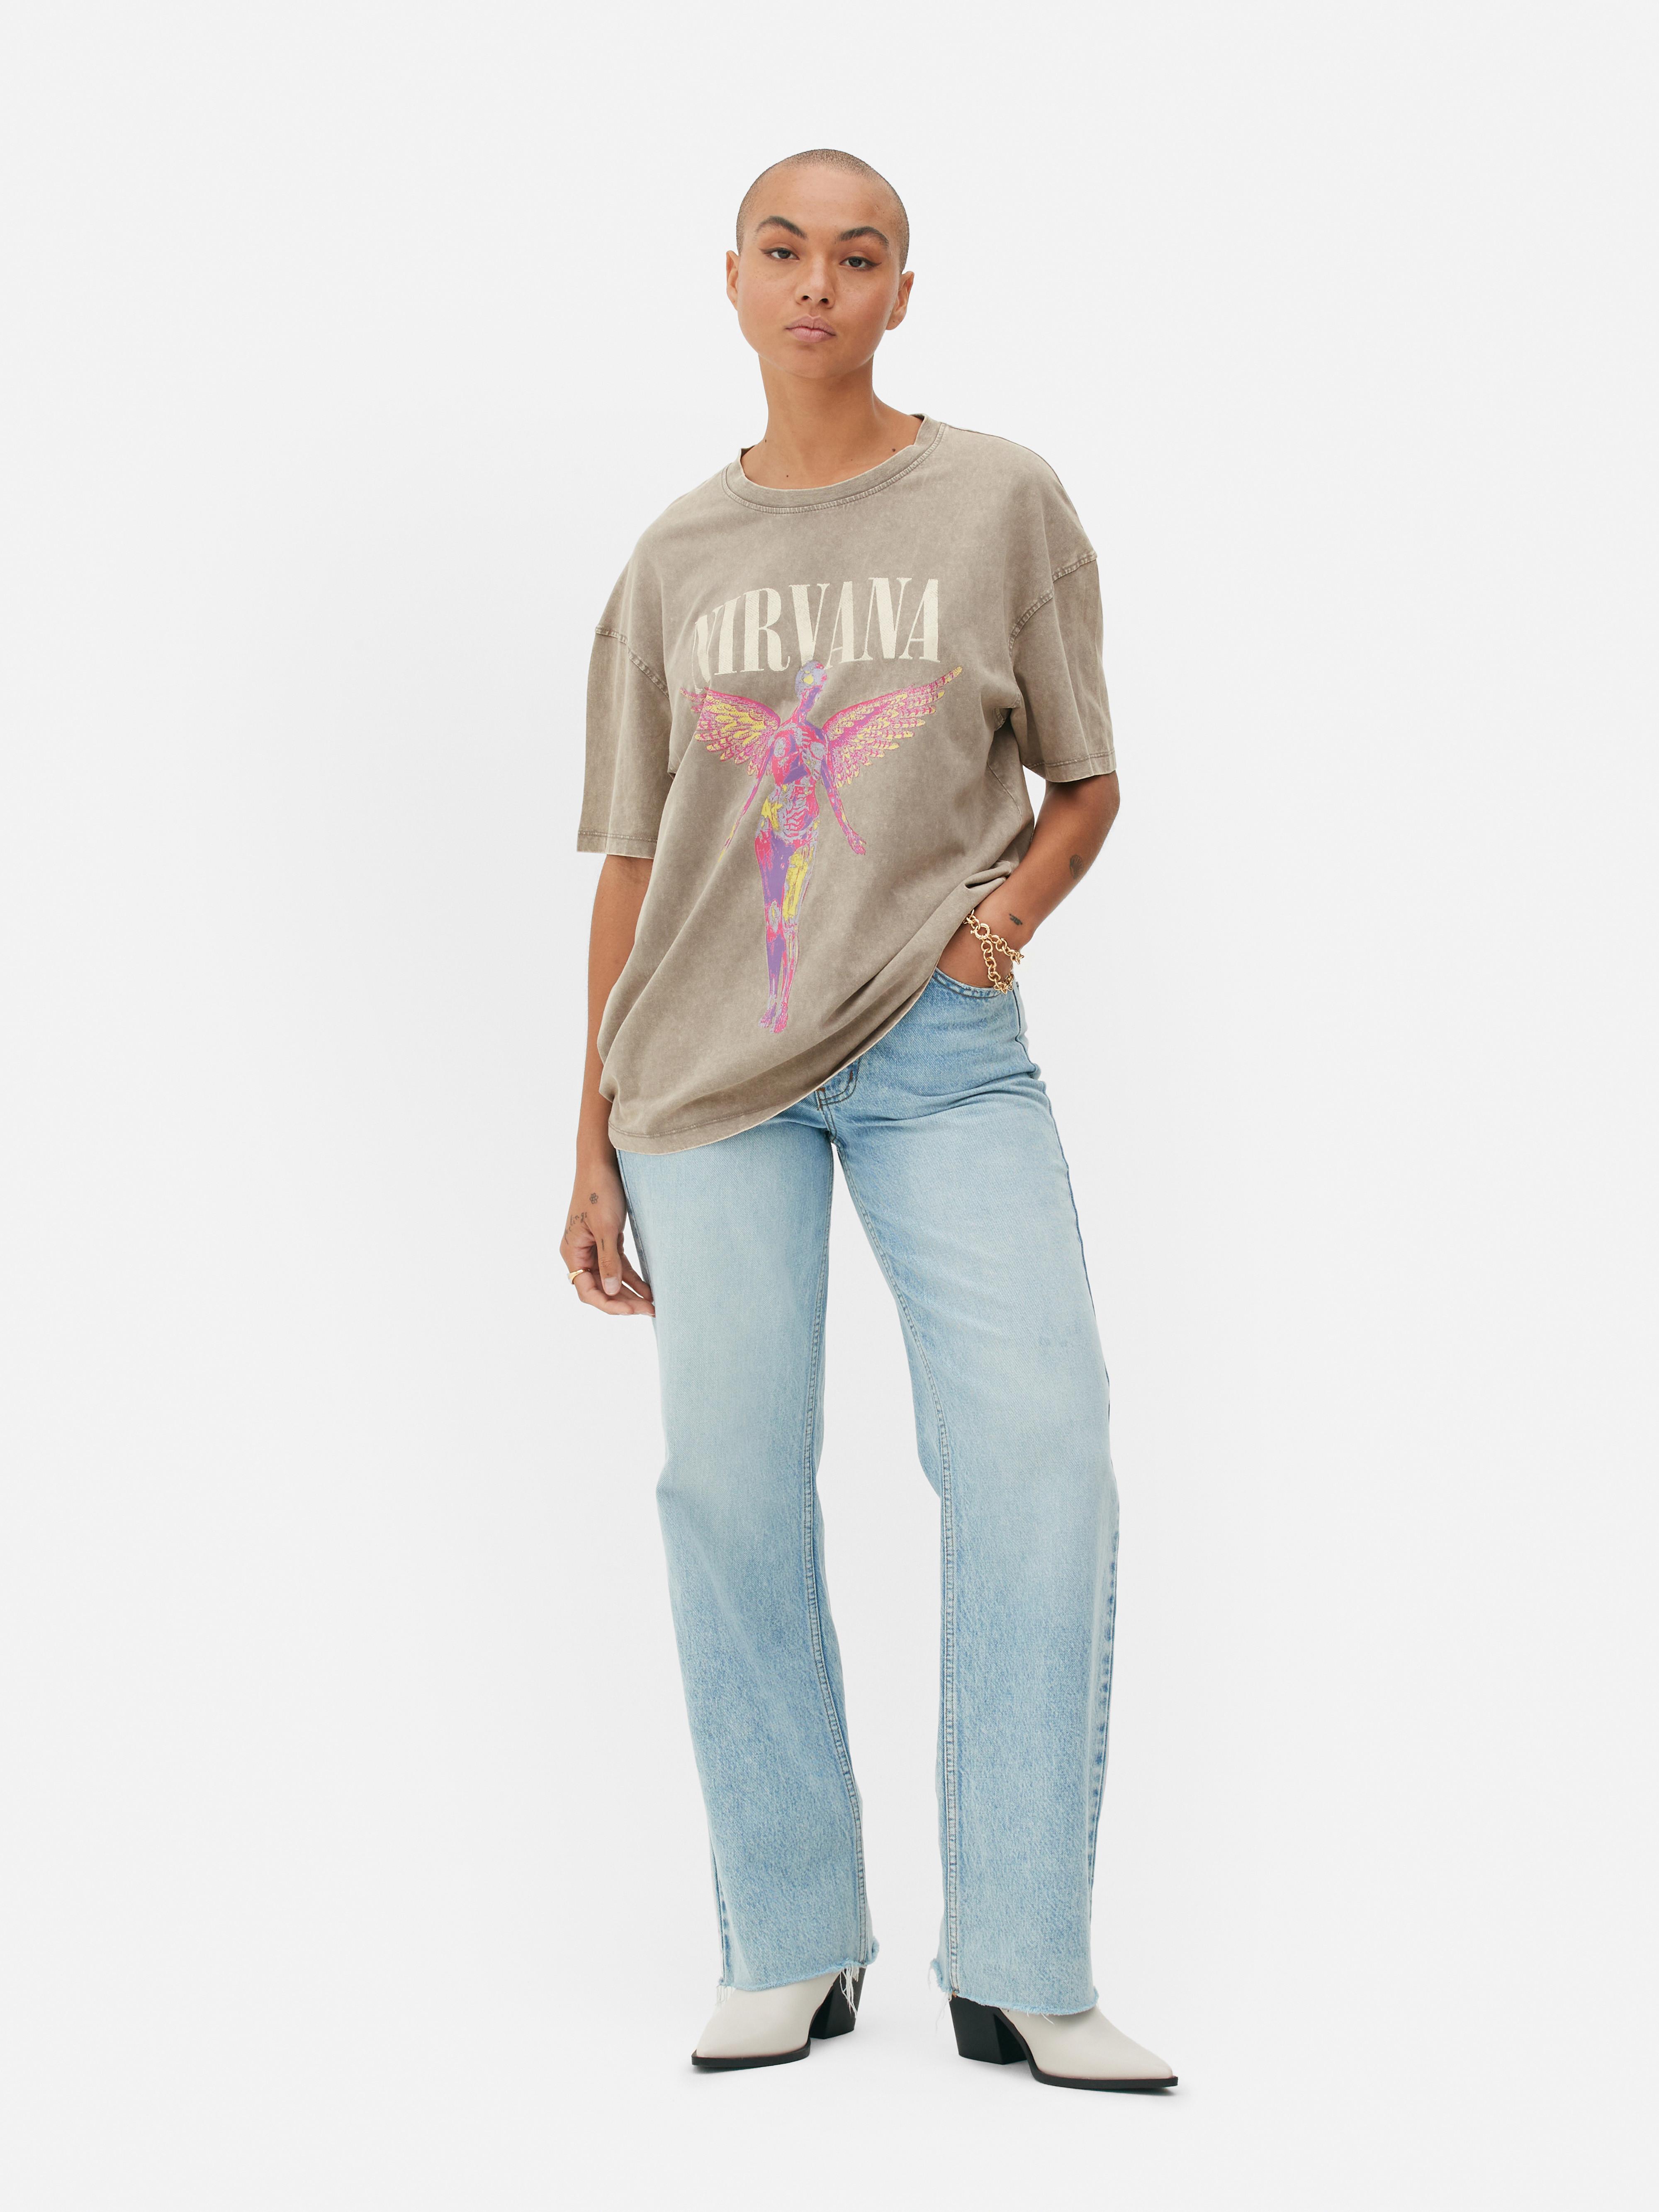 Nirvana Oversized Graphic T-Shirt